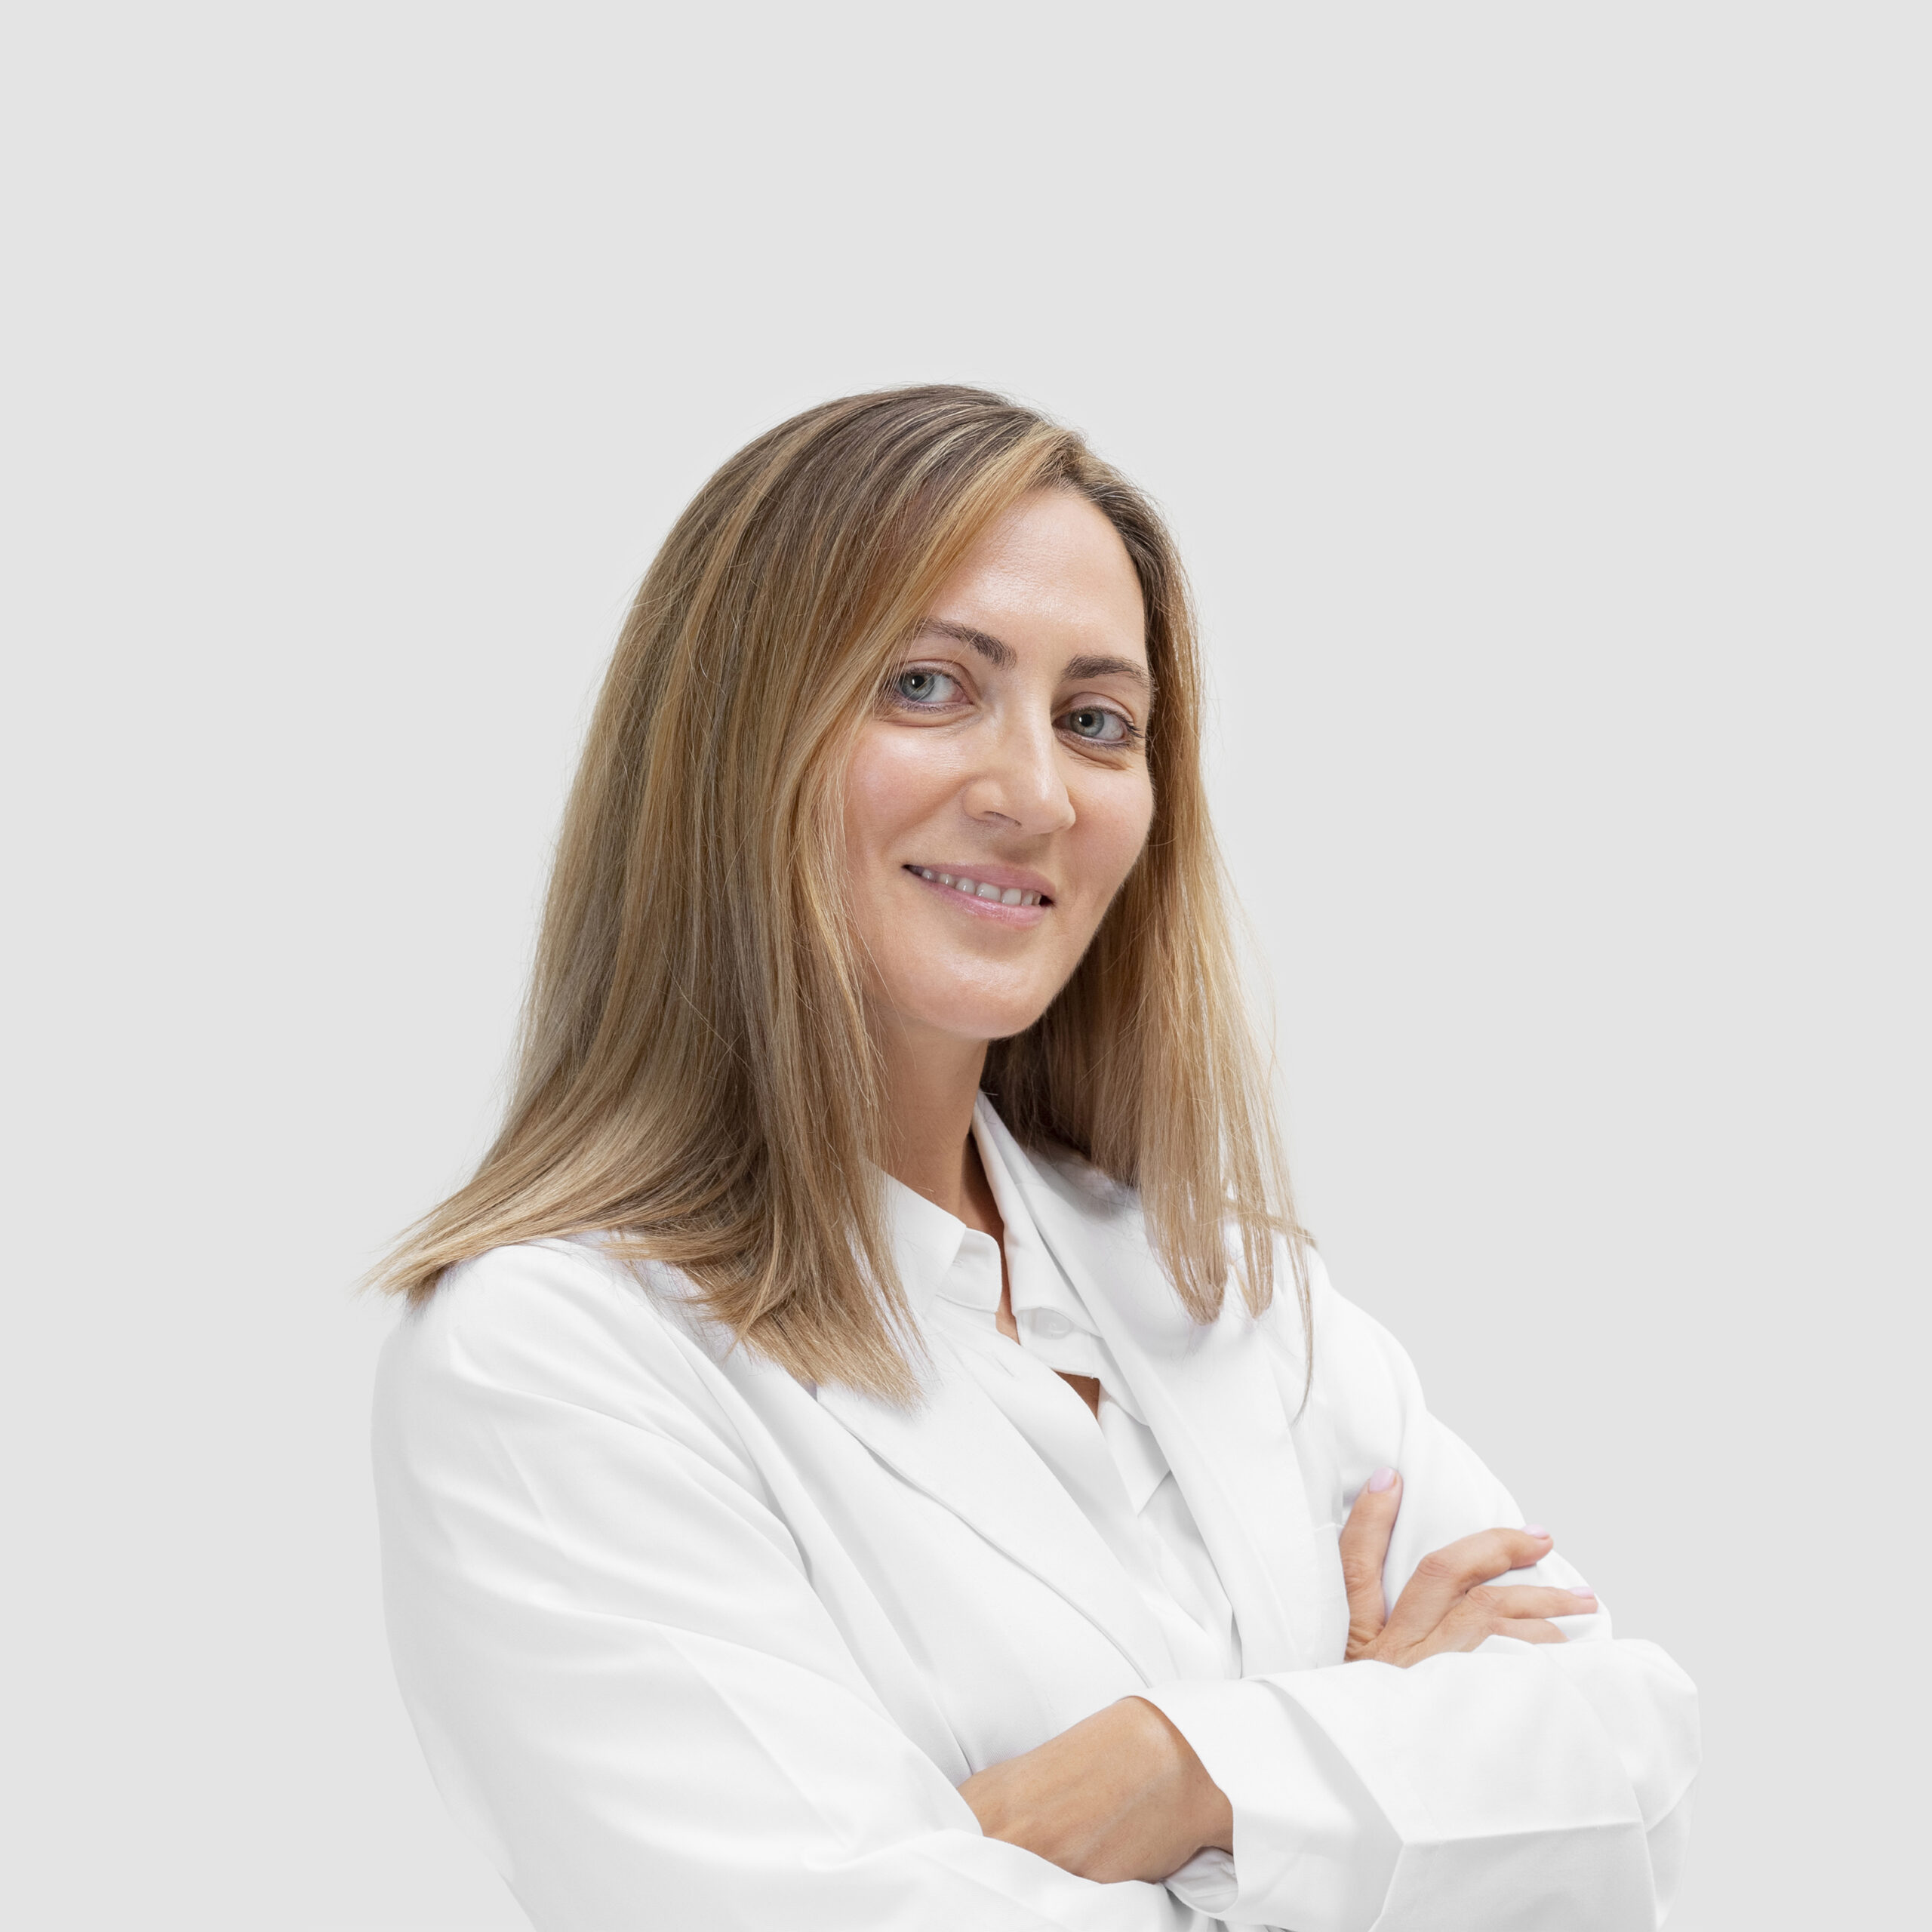 Oftalmología | Murcia - Molina de Segura | Dra. Elisa Foulquié | VI&BE